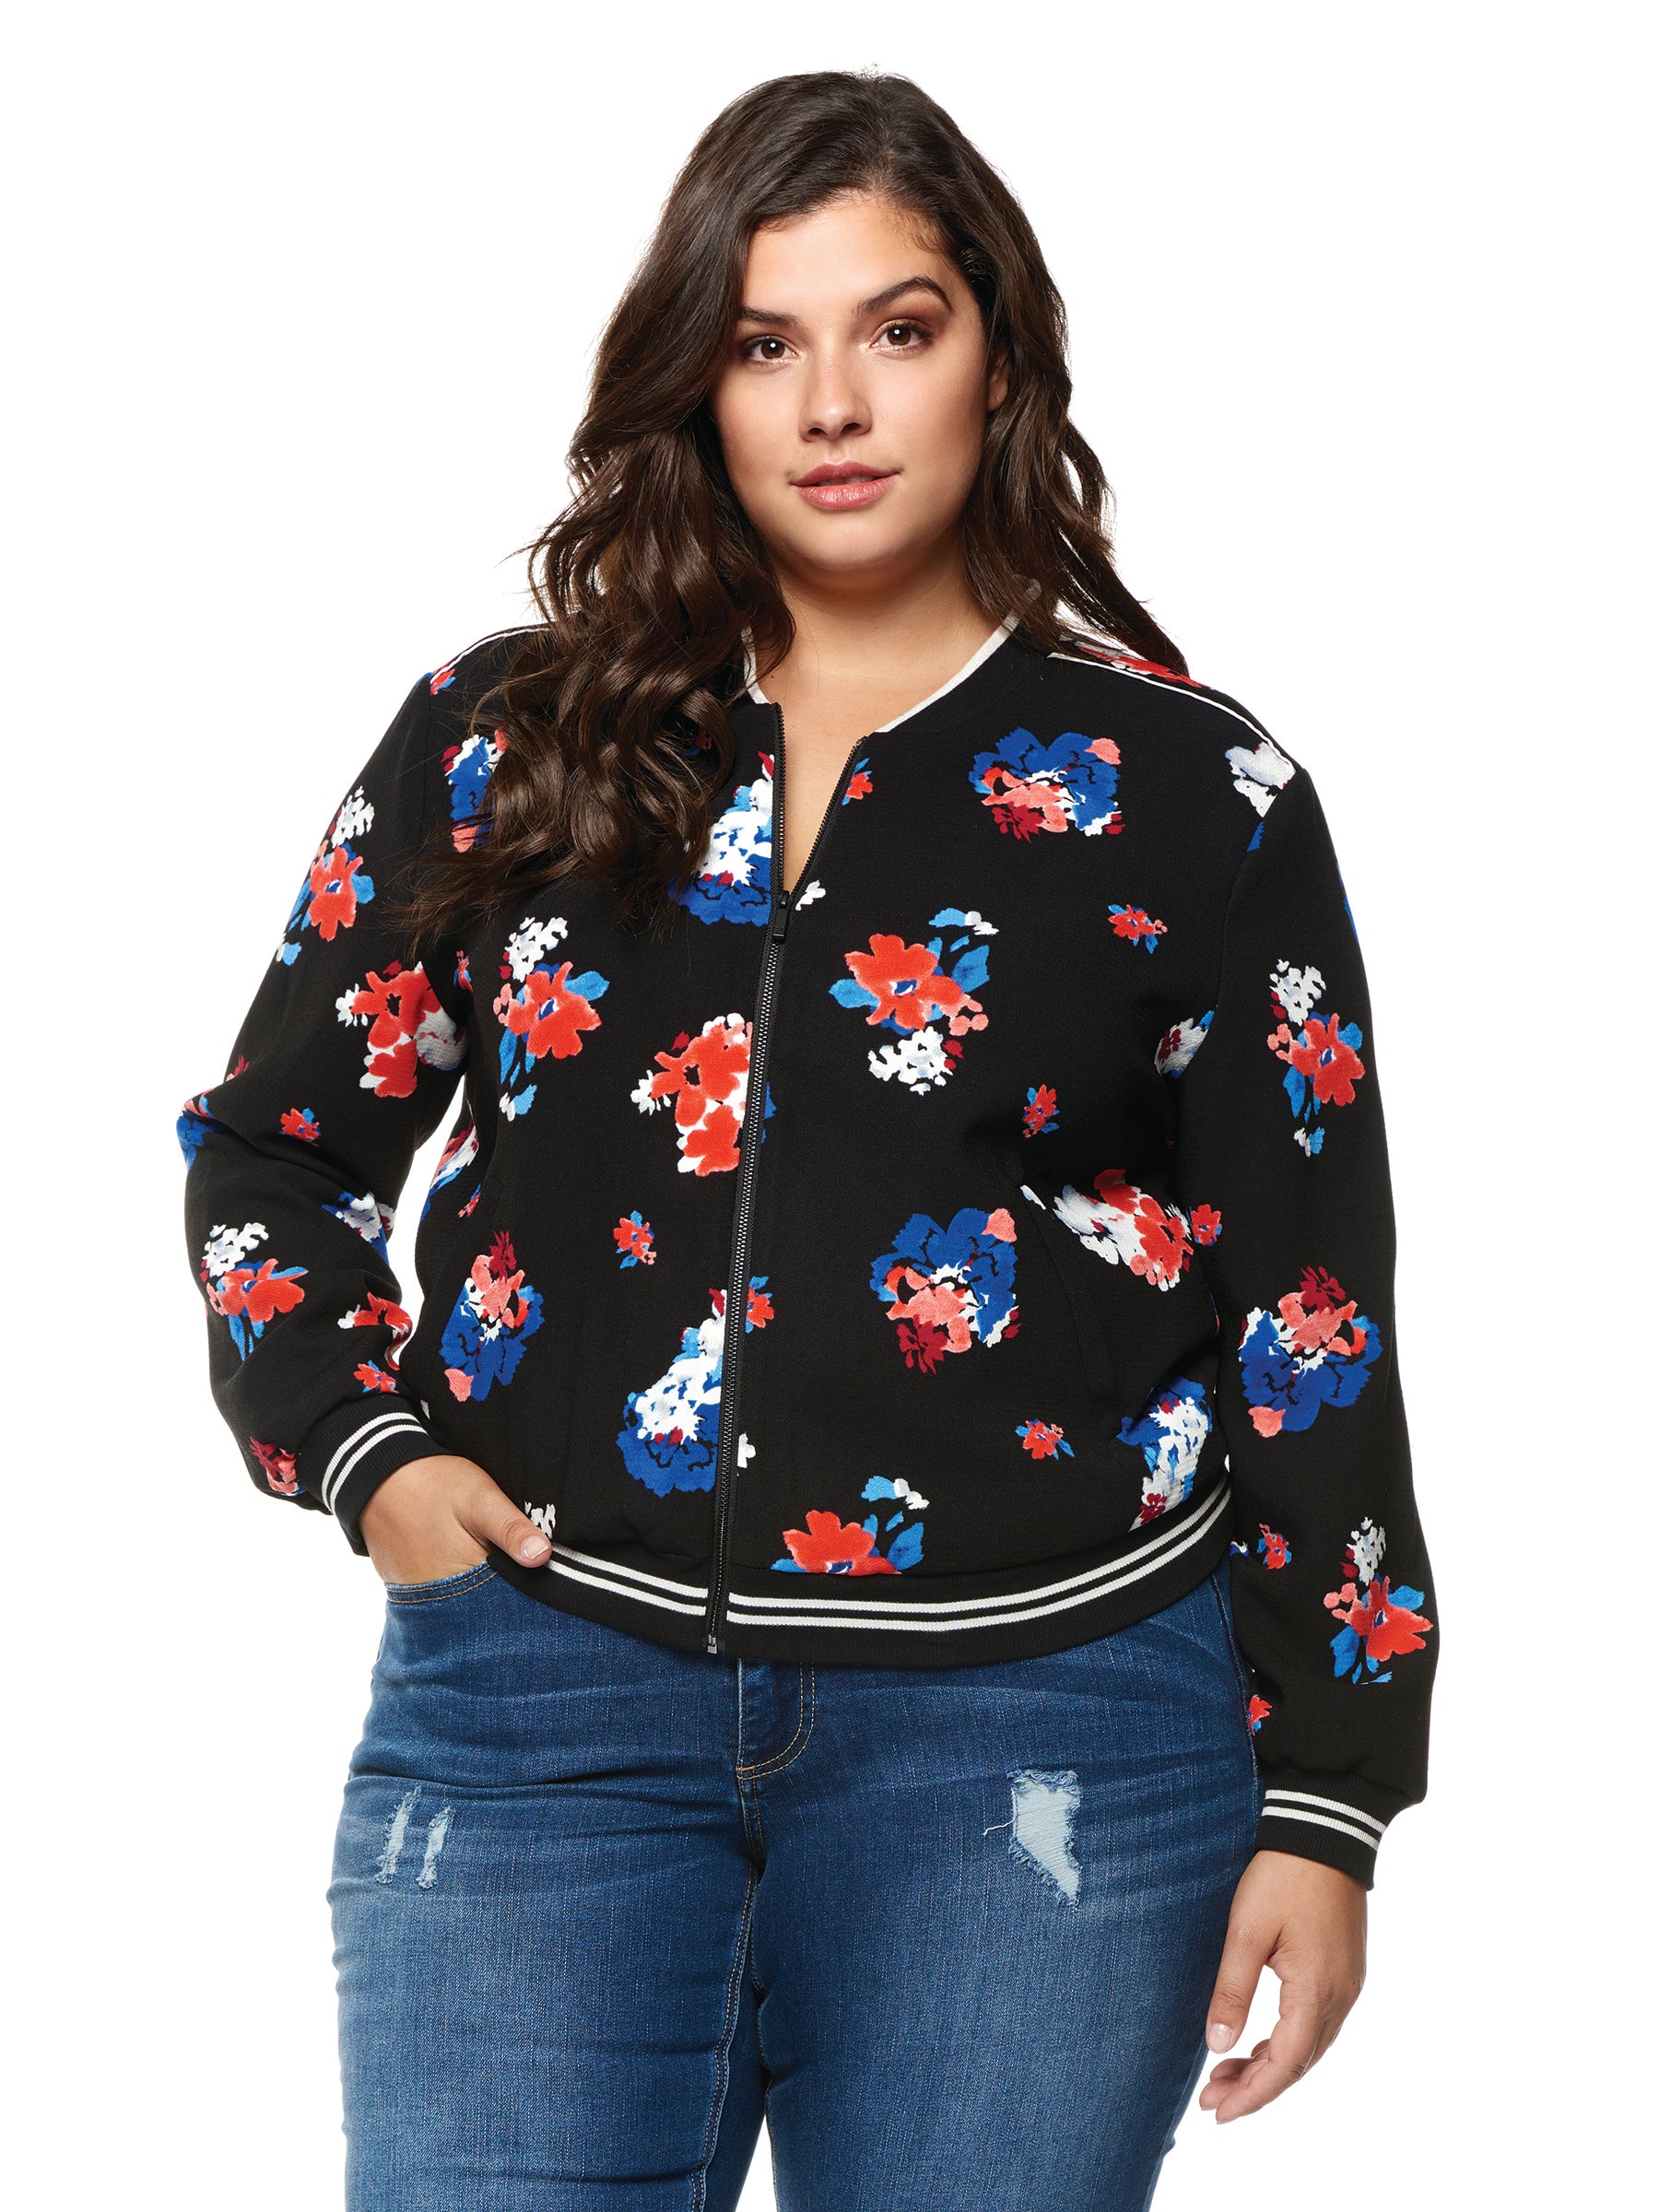 Plus Size Floral Printed Jacket at MARIA VINCENT Boutique – Boutique